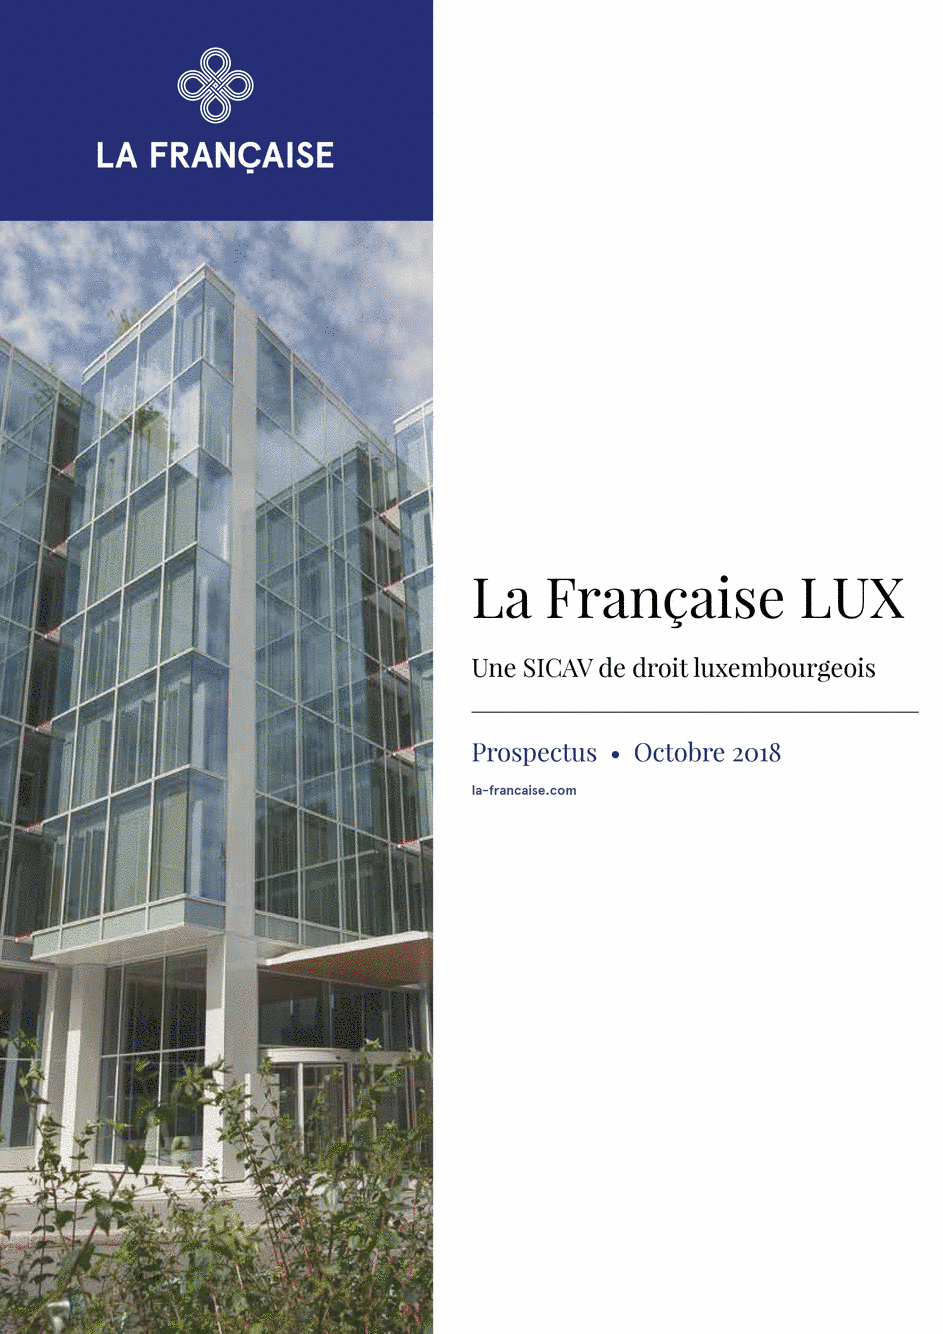 Prospectus La Française LUX - Forum Global Real Estate Securities - I (D) USD H - 02/10/2018 - Français